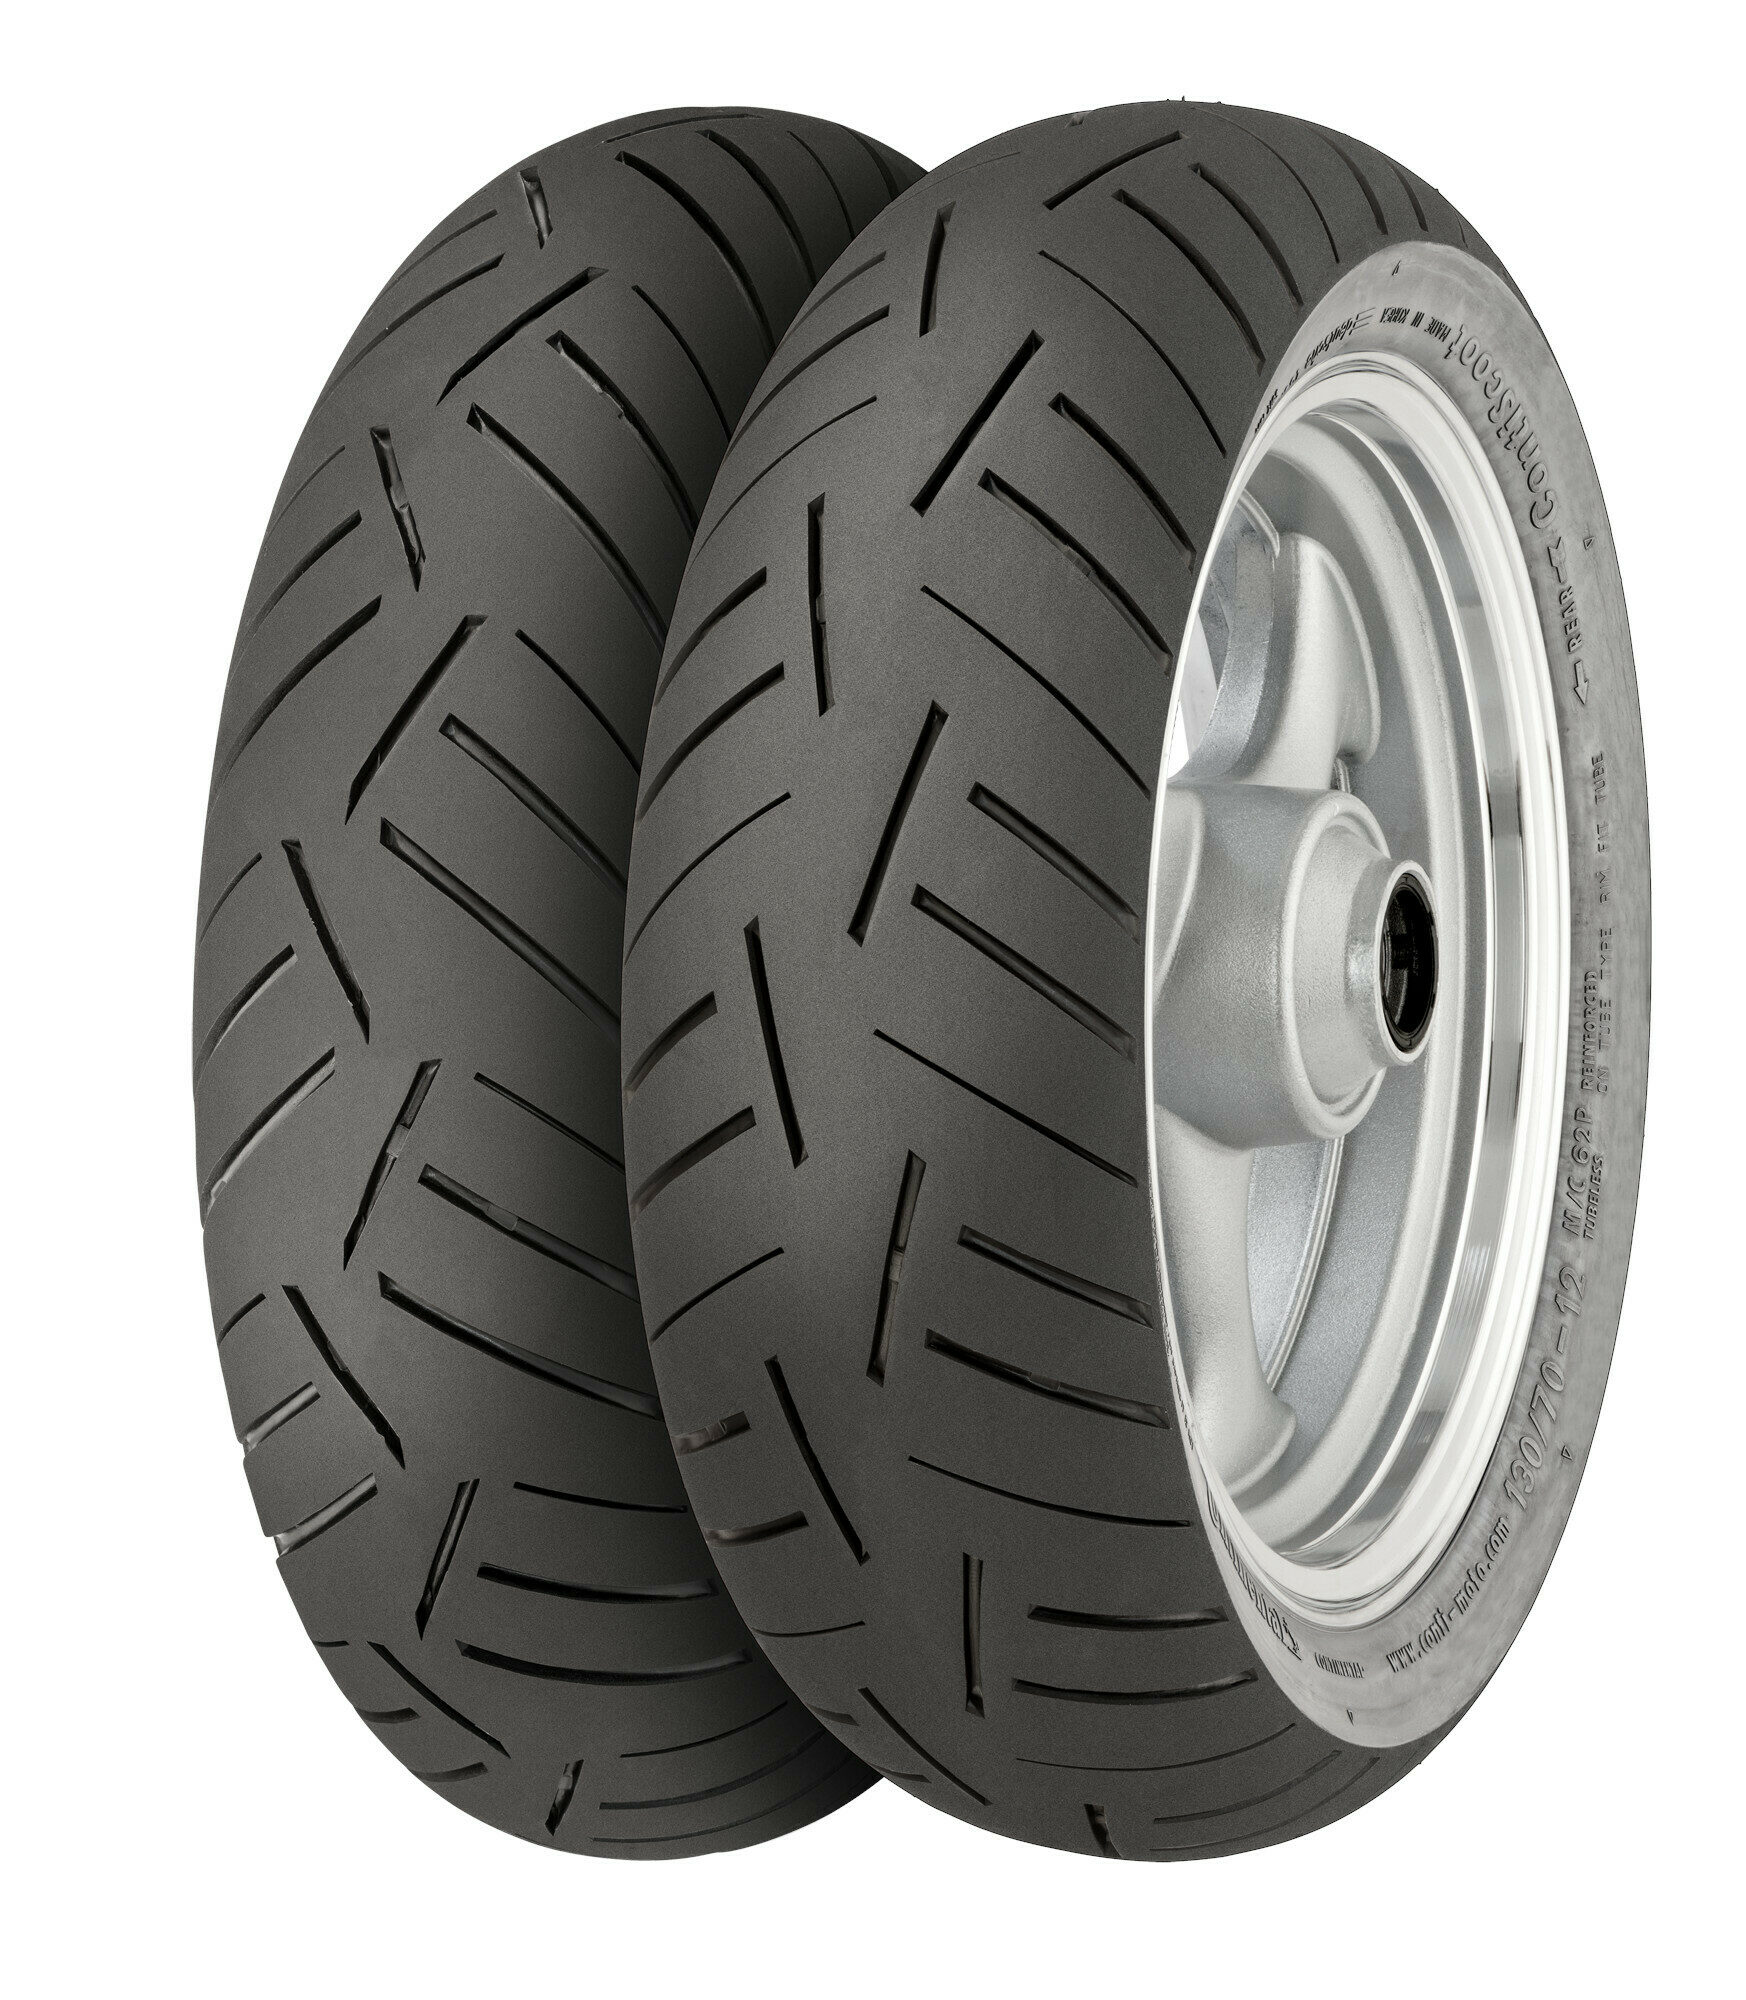 Continental Tire recalls ContiScoot tires